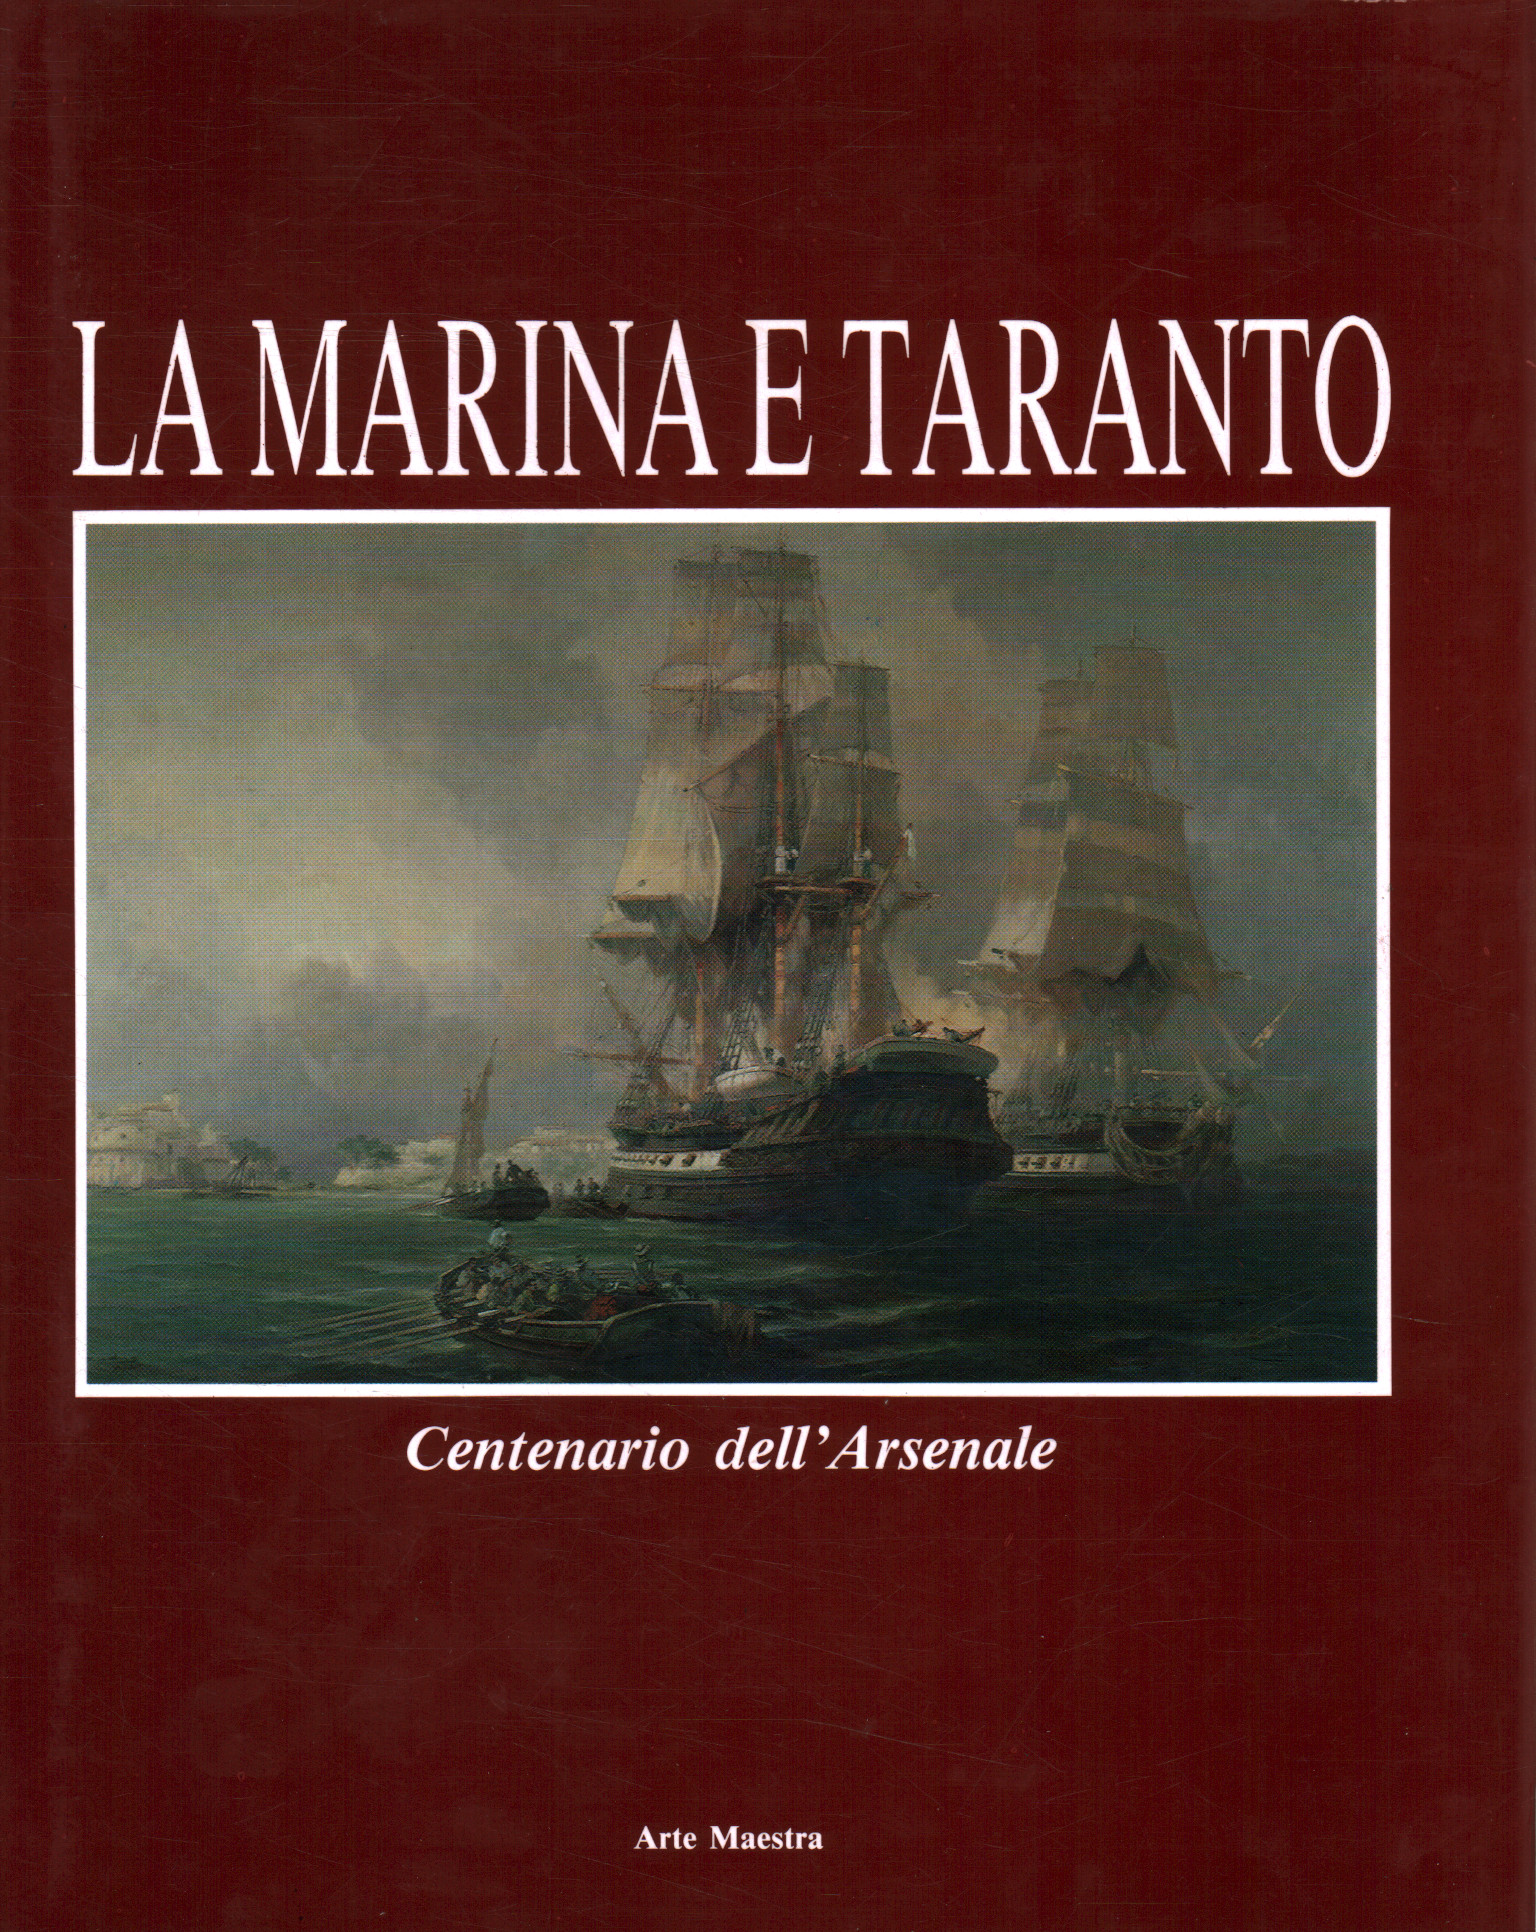 The navy and Taranto